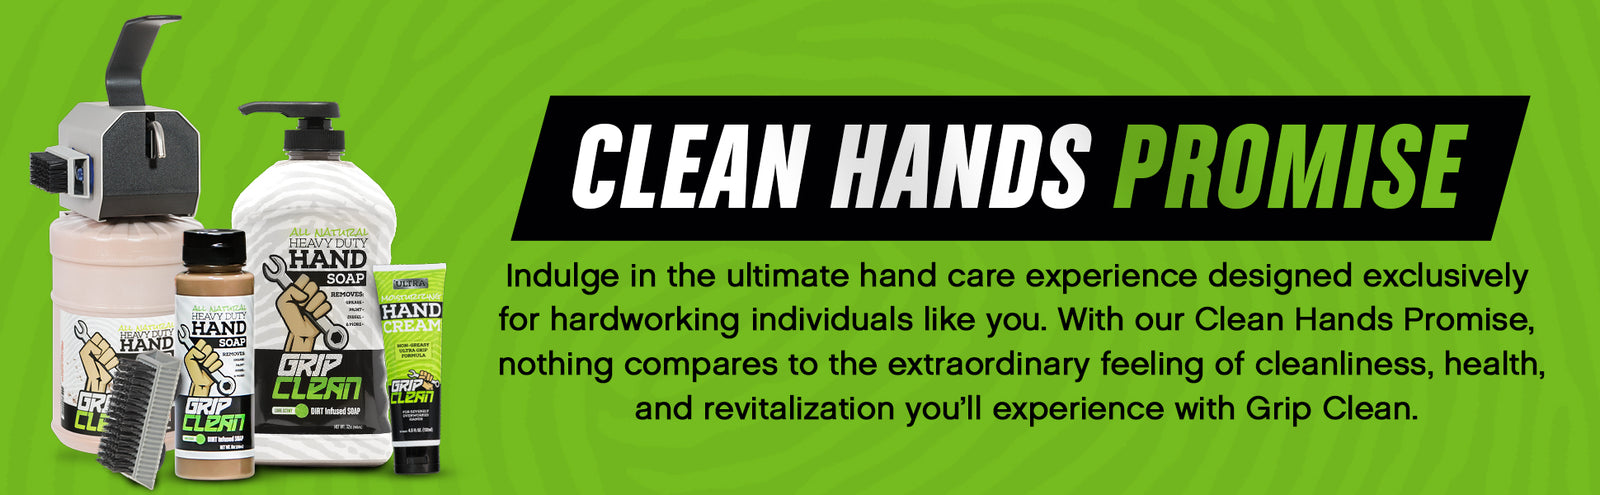 Grip Clean N128-4 Grip Clean All Natural Heavy-Duty Hand Soap